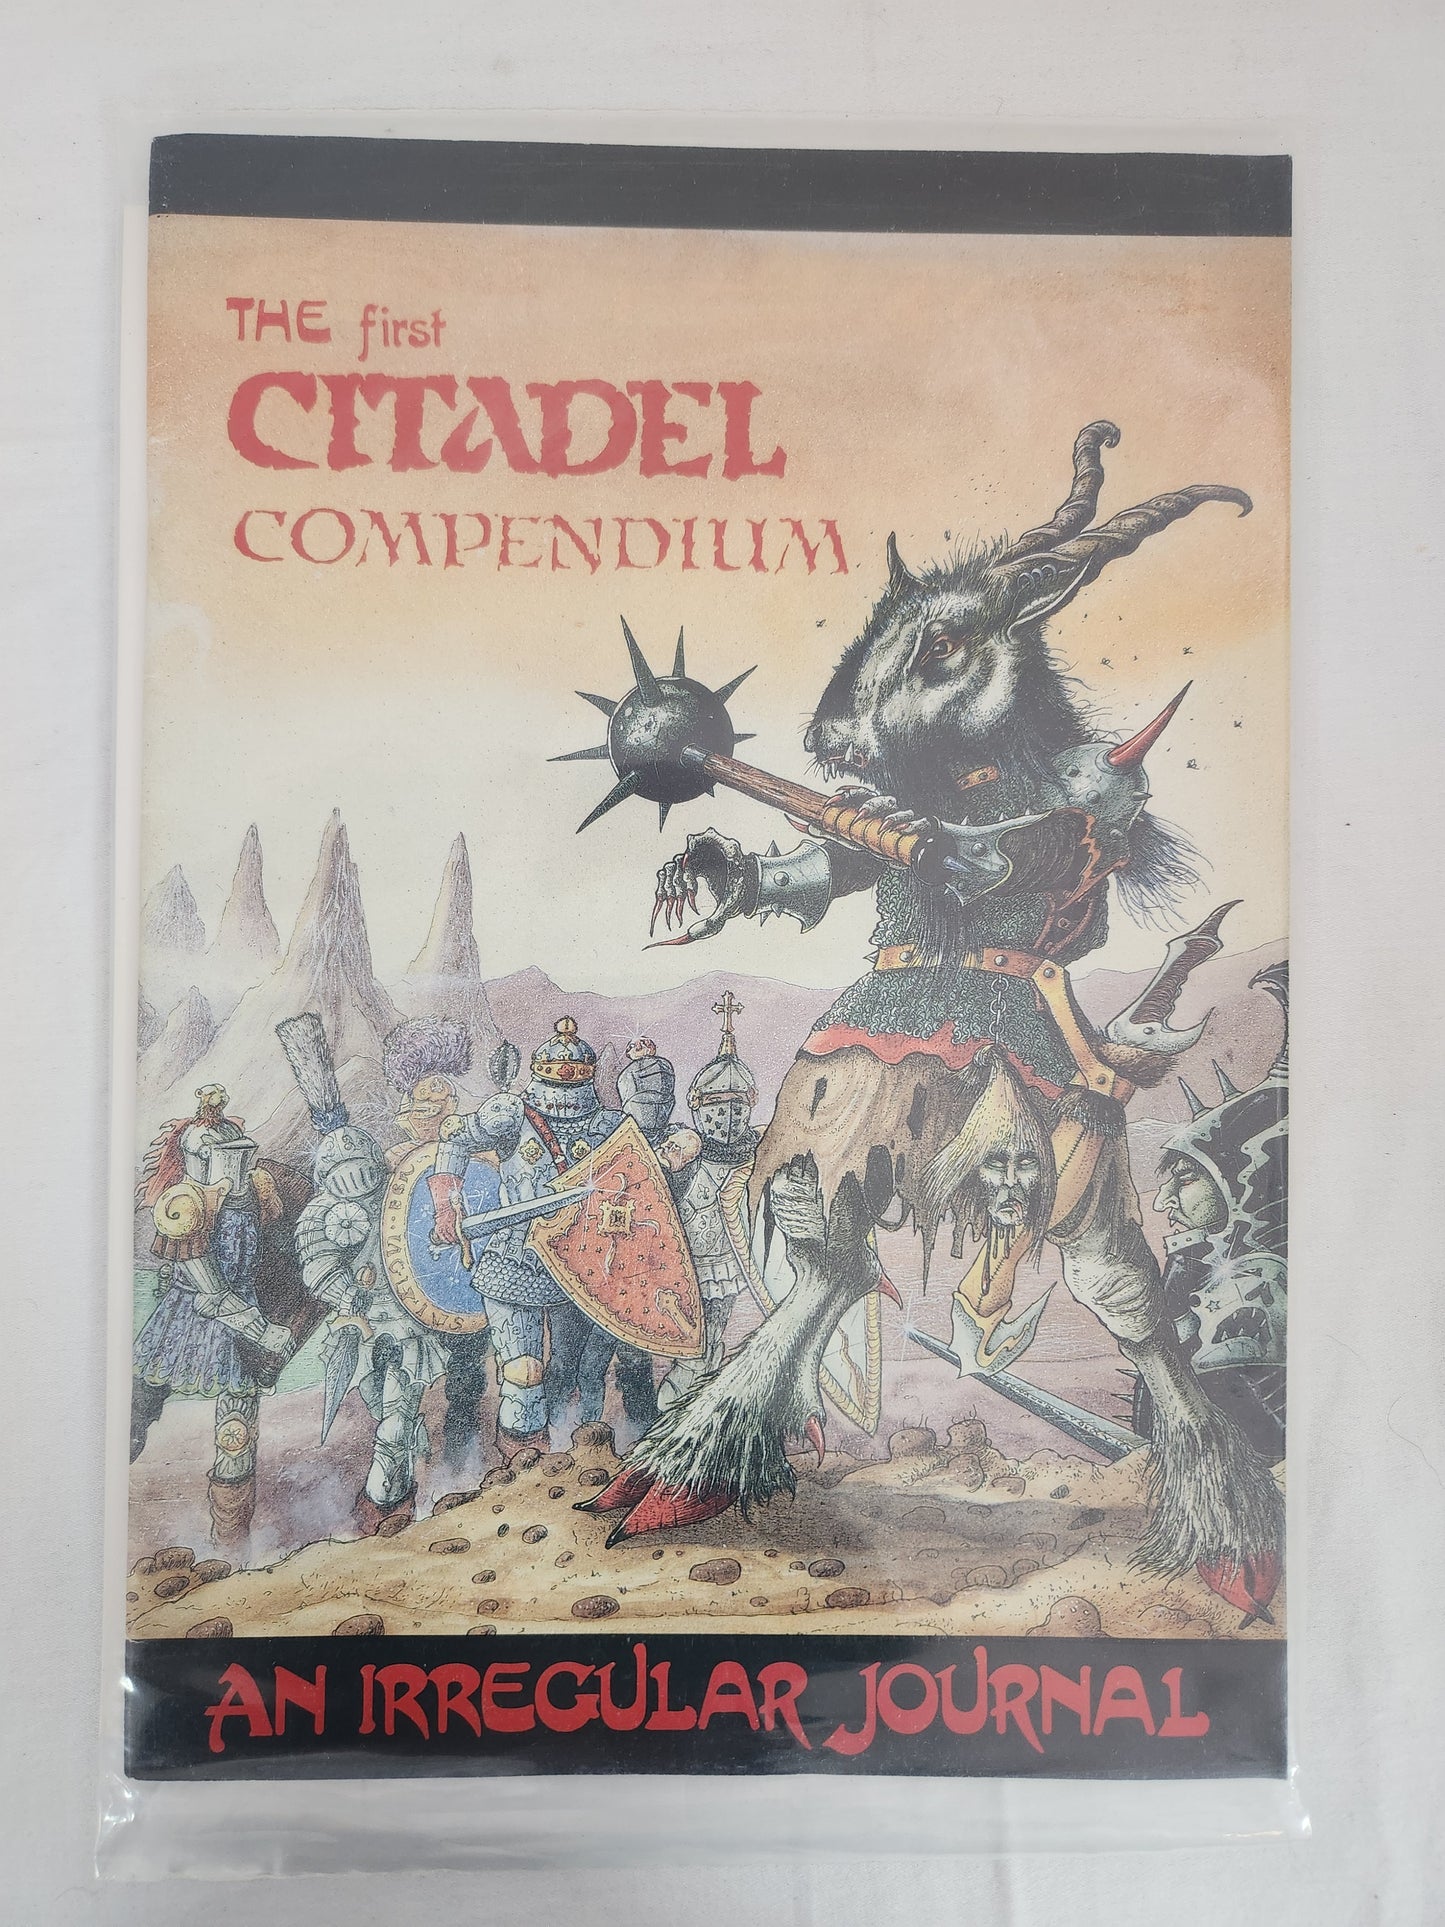 The First Citadel Compendium - An Irregular Journal - Fine condition